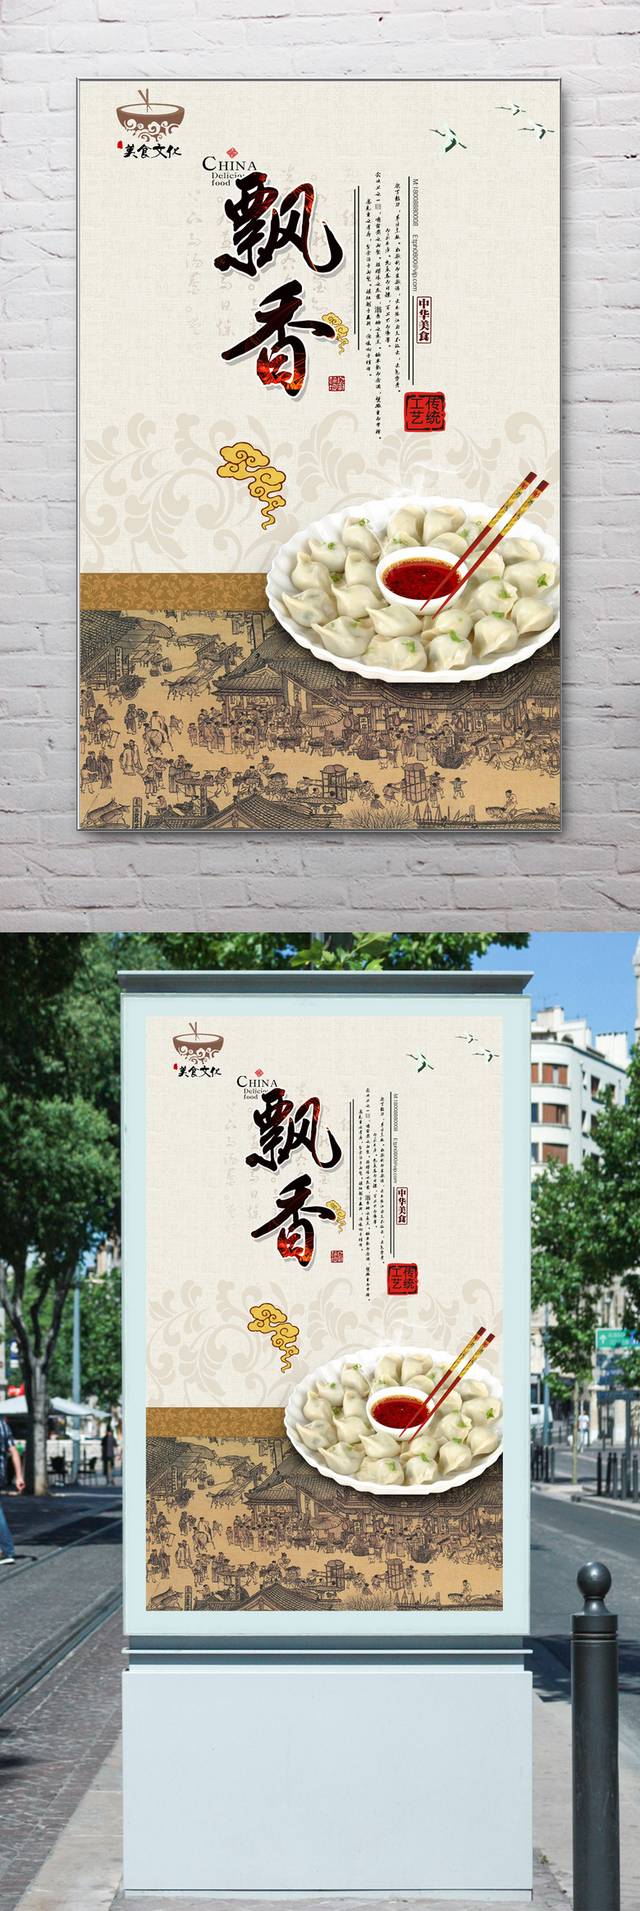 高档哈尔滨水饺宣传海报设计